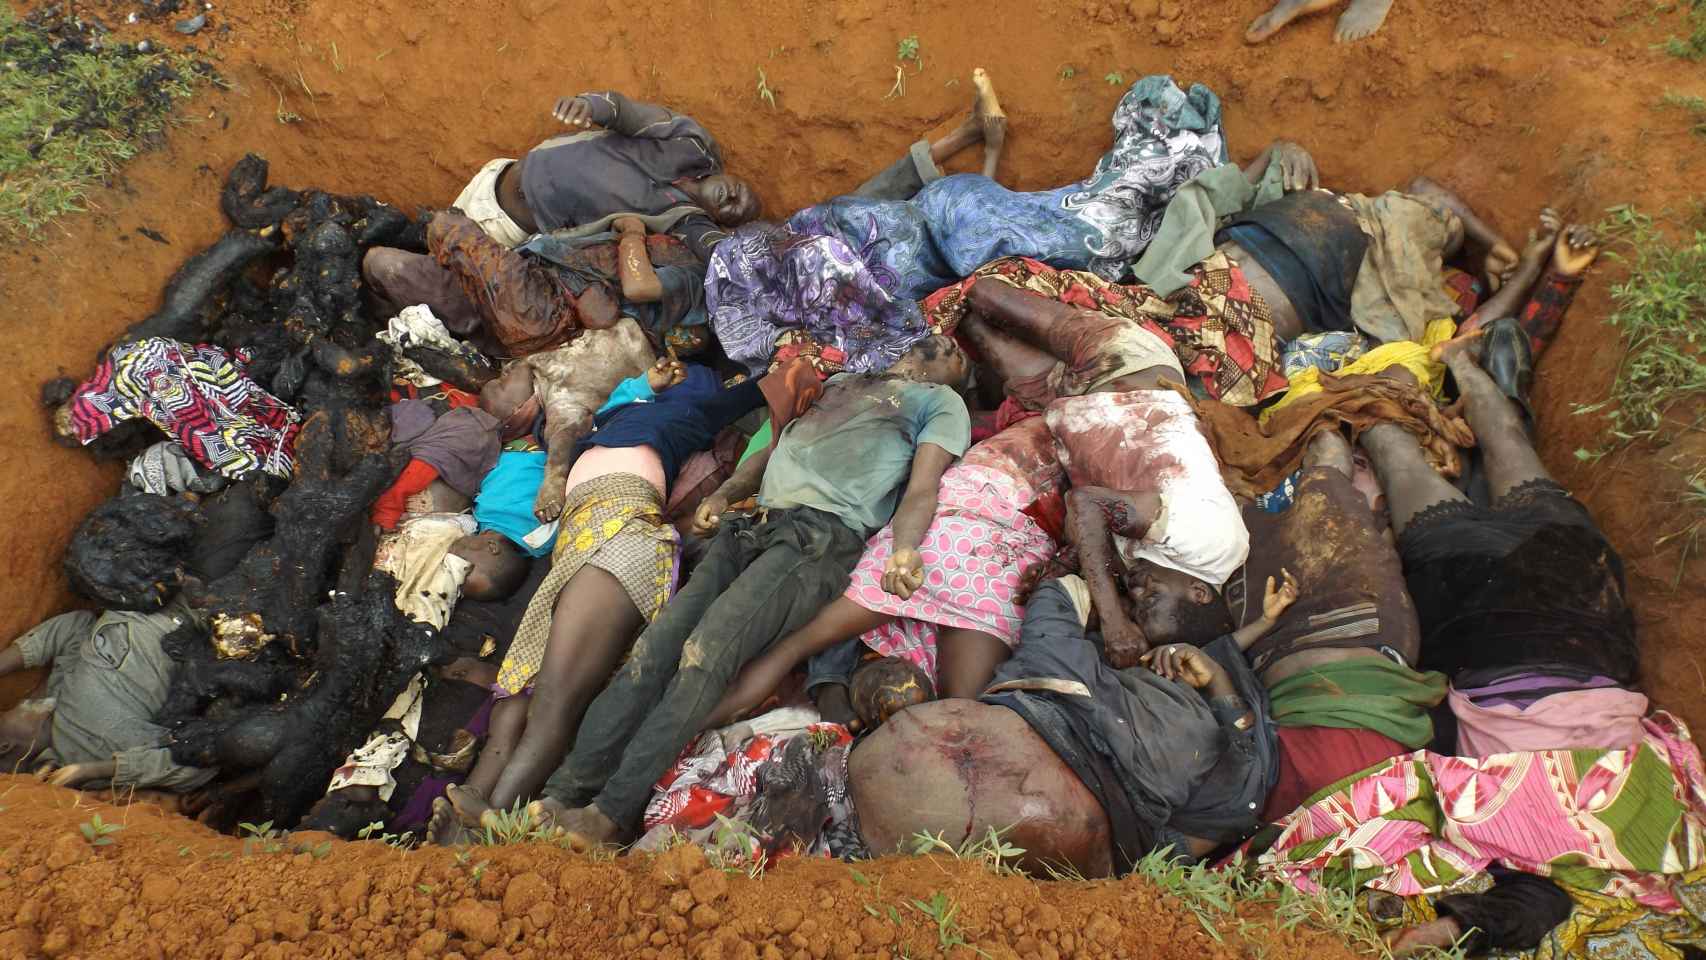 Egipto - En sólo un mes más de 200 cristianos han sido asesinados en Nigeria por musulmanes - Página 5 Nigeria-Terrorismo-Genocidio-Boko_Haram-Mundo_449467338_139648665_1706x960